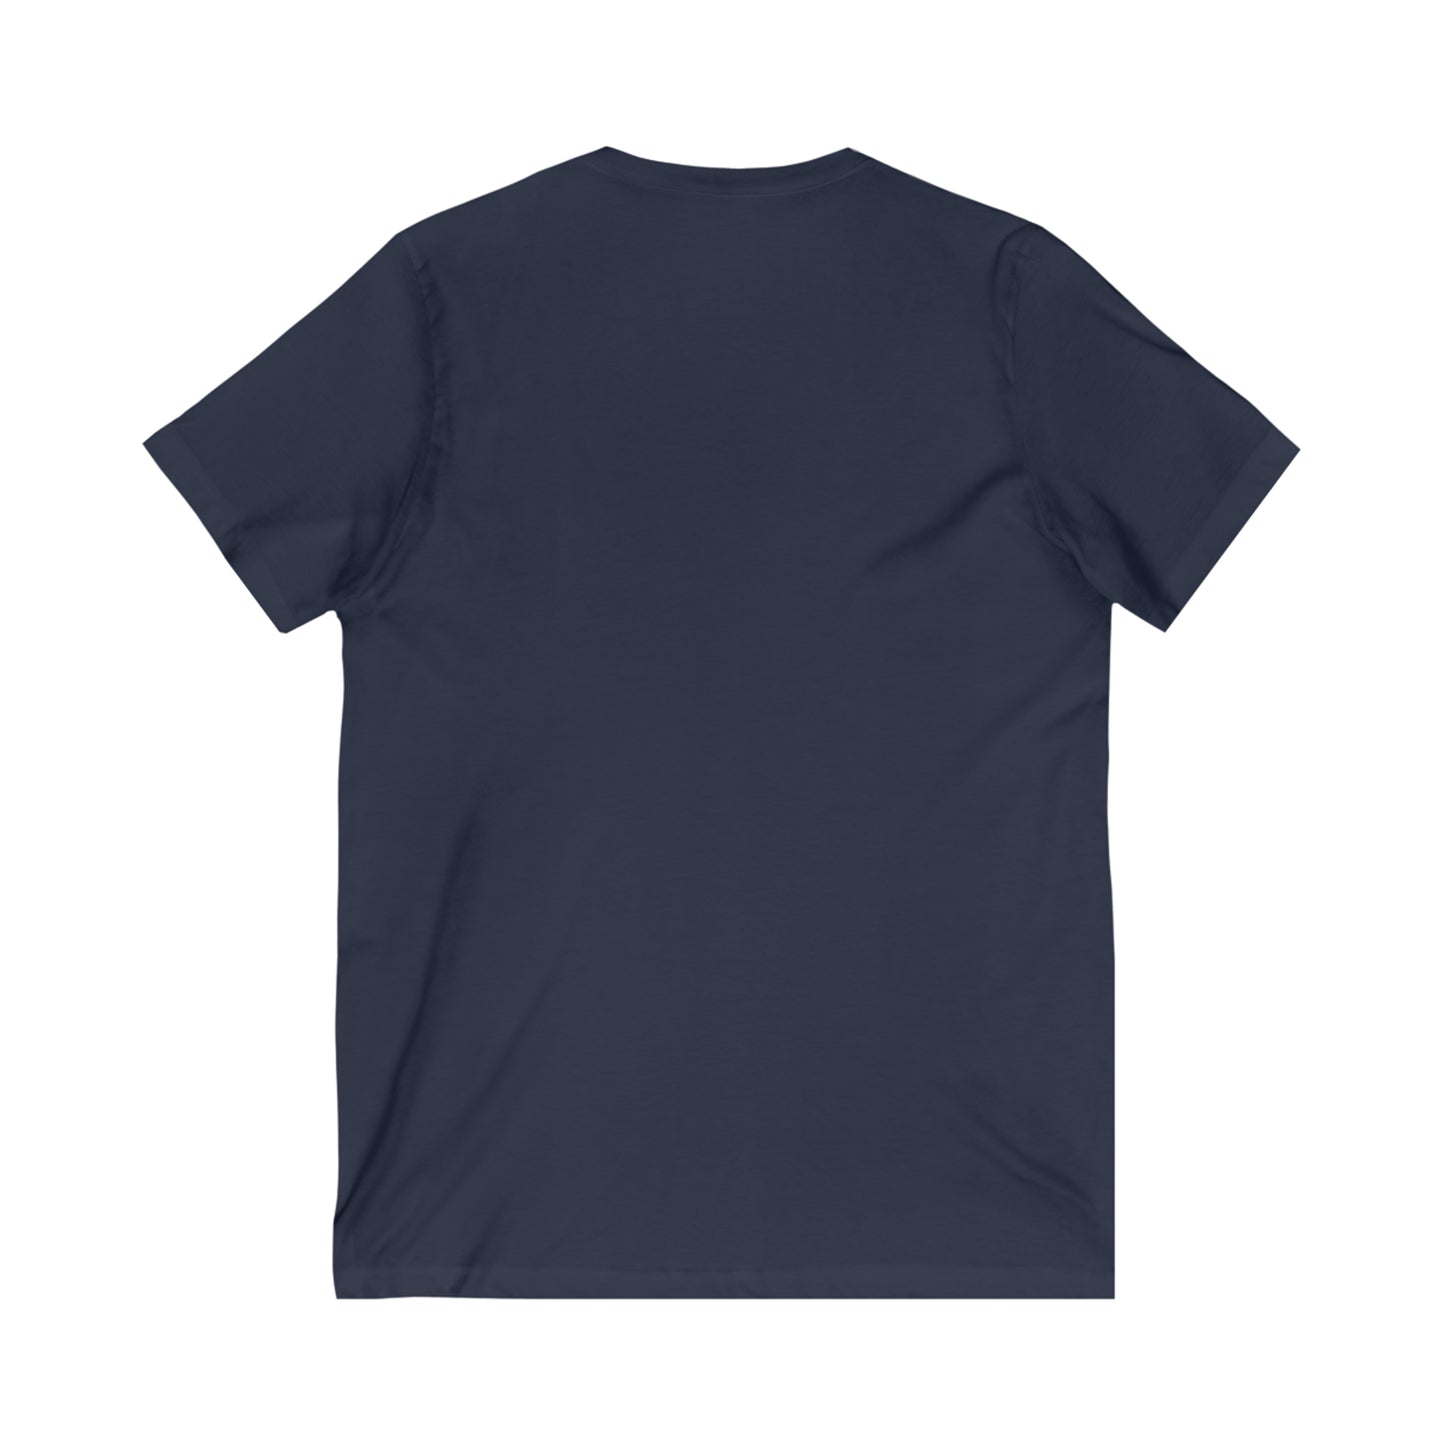 T-shirt. Gin's Den Art Unisex Jersey Short Sleeve V-Neck Tee